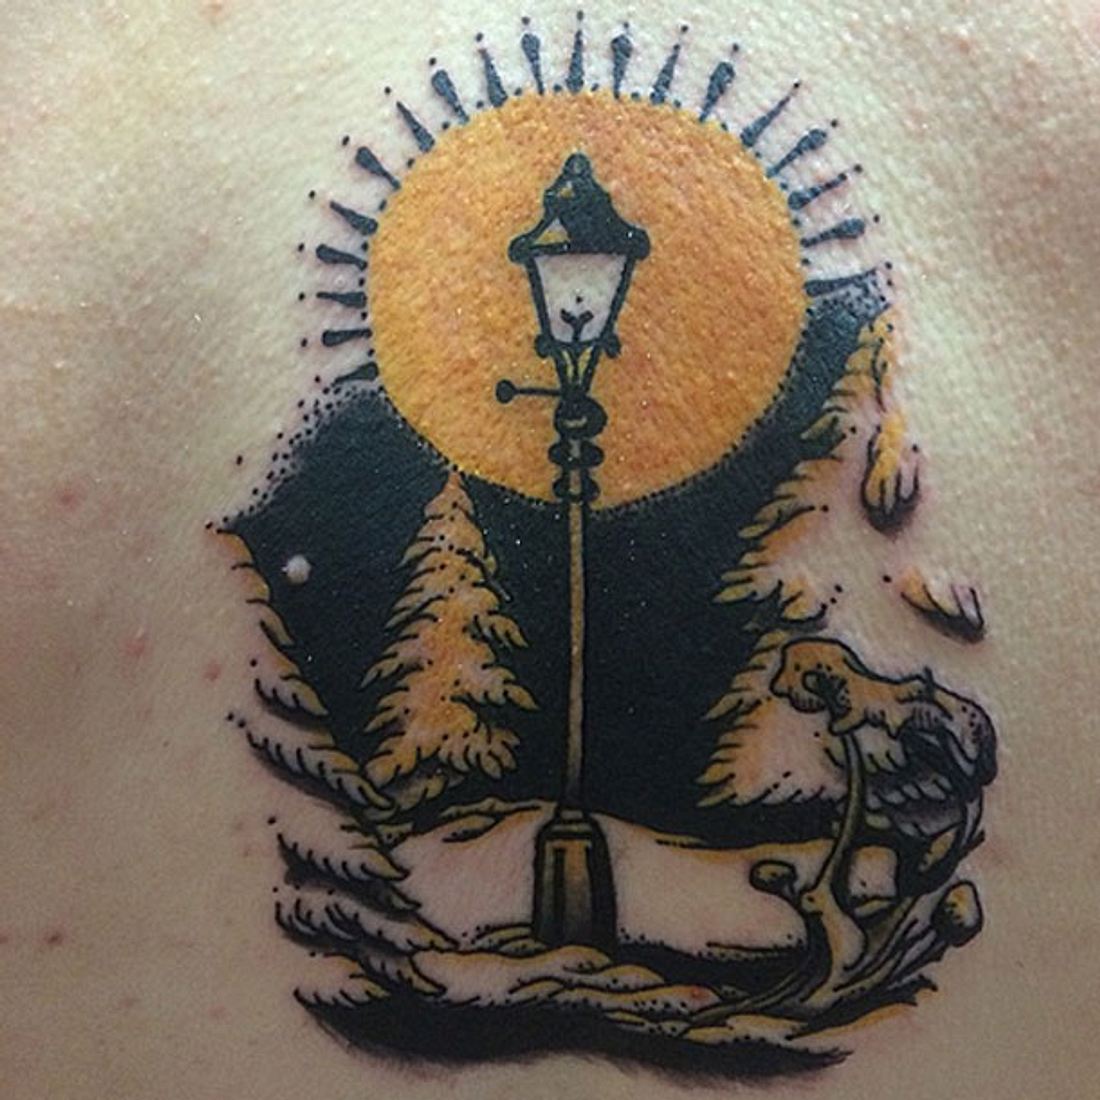 Chroniken von Narnia Tattoo